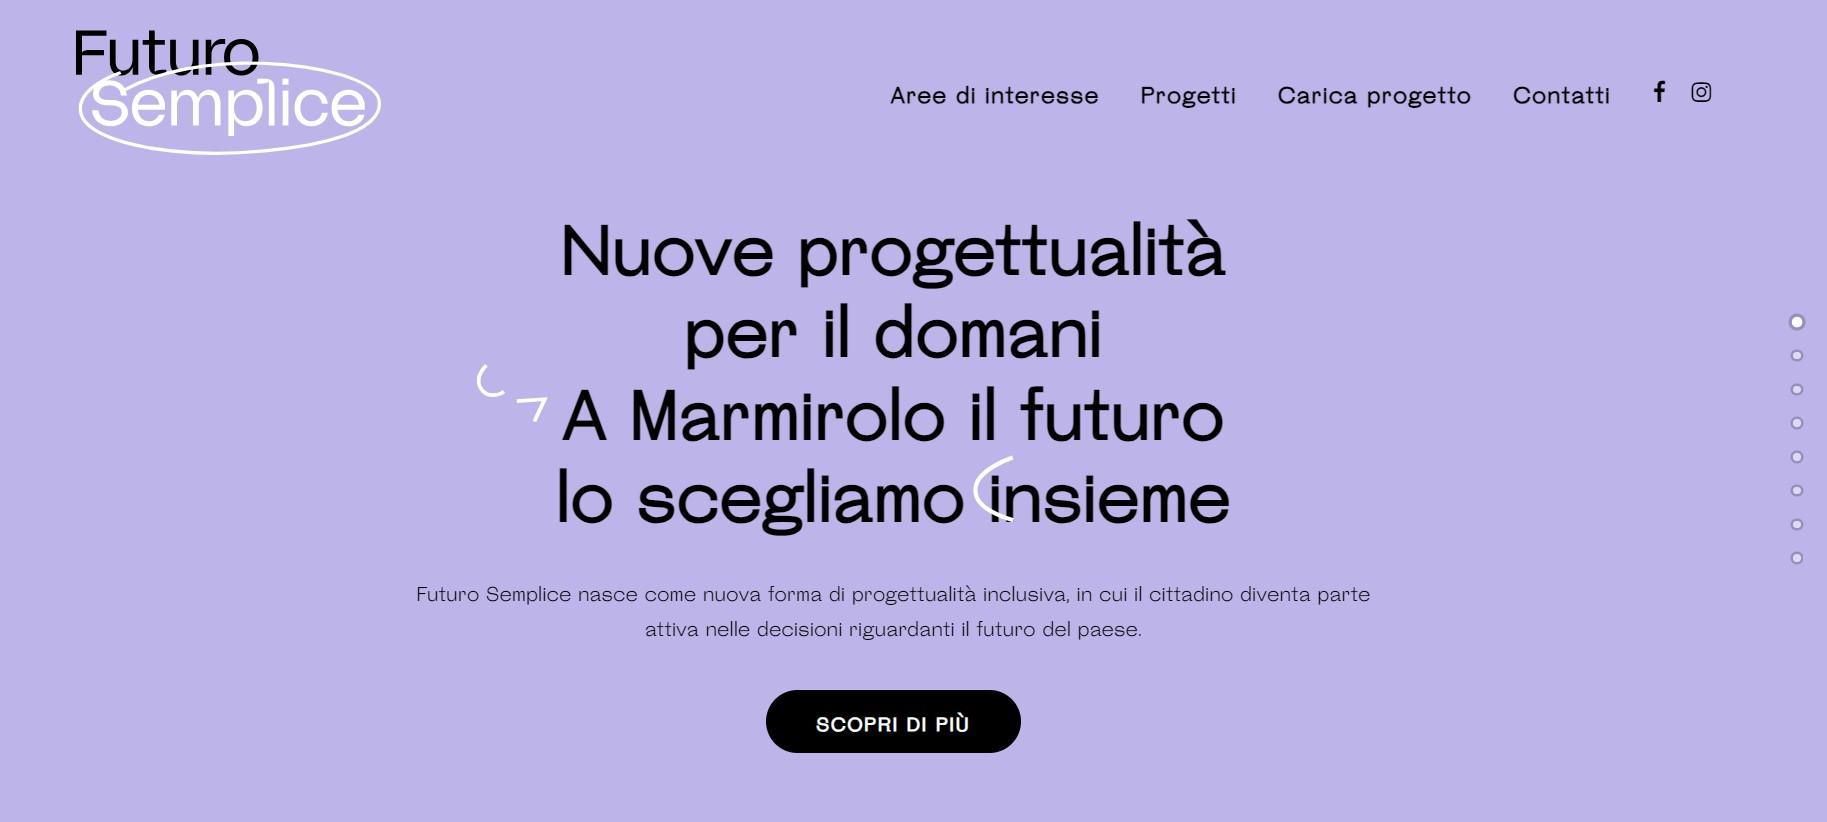 Futuro Semplice: torna a Marmirolo la piattaforma dedicata alla cittadinanza attiva